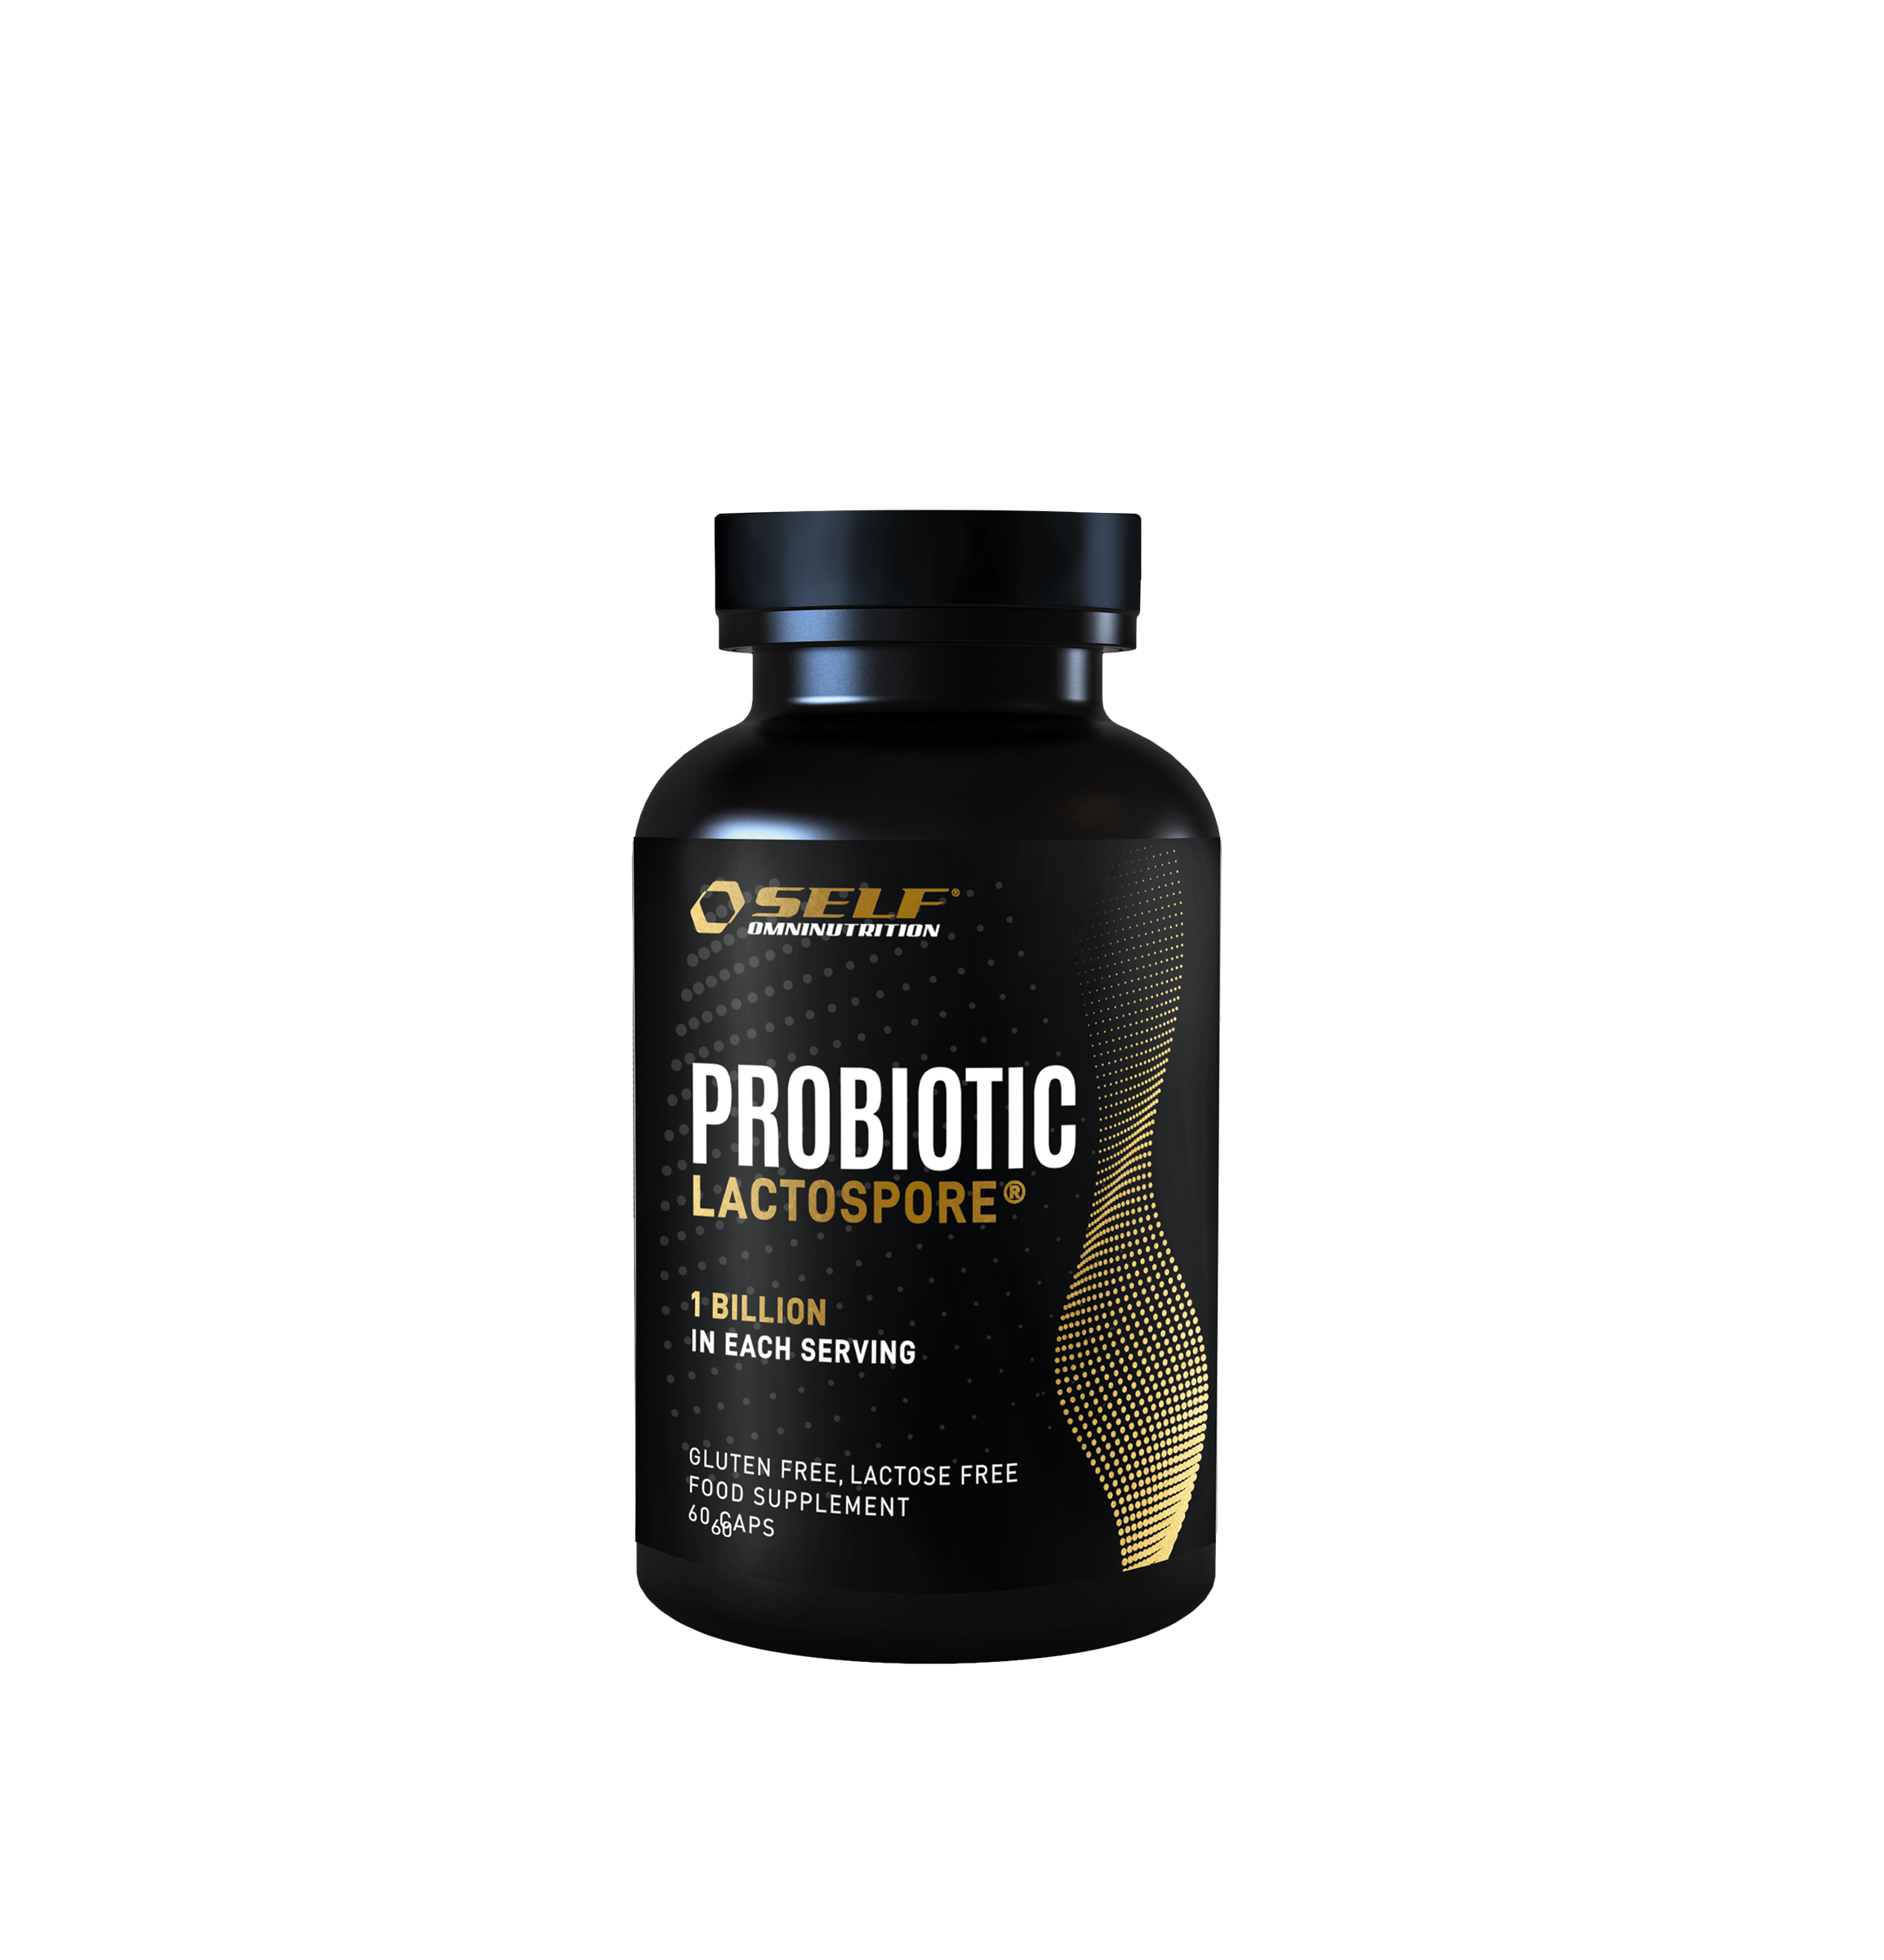 Probiotic Lactospore®